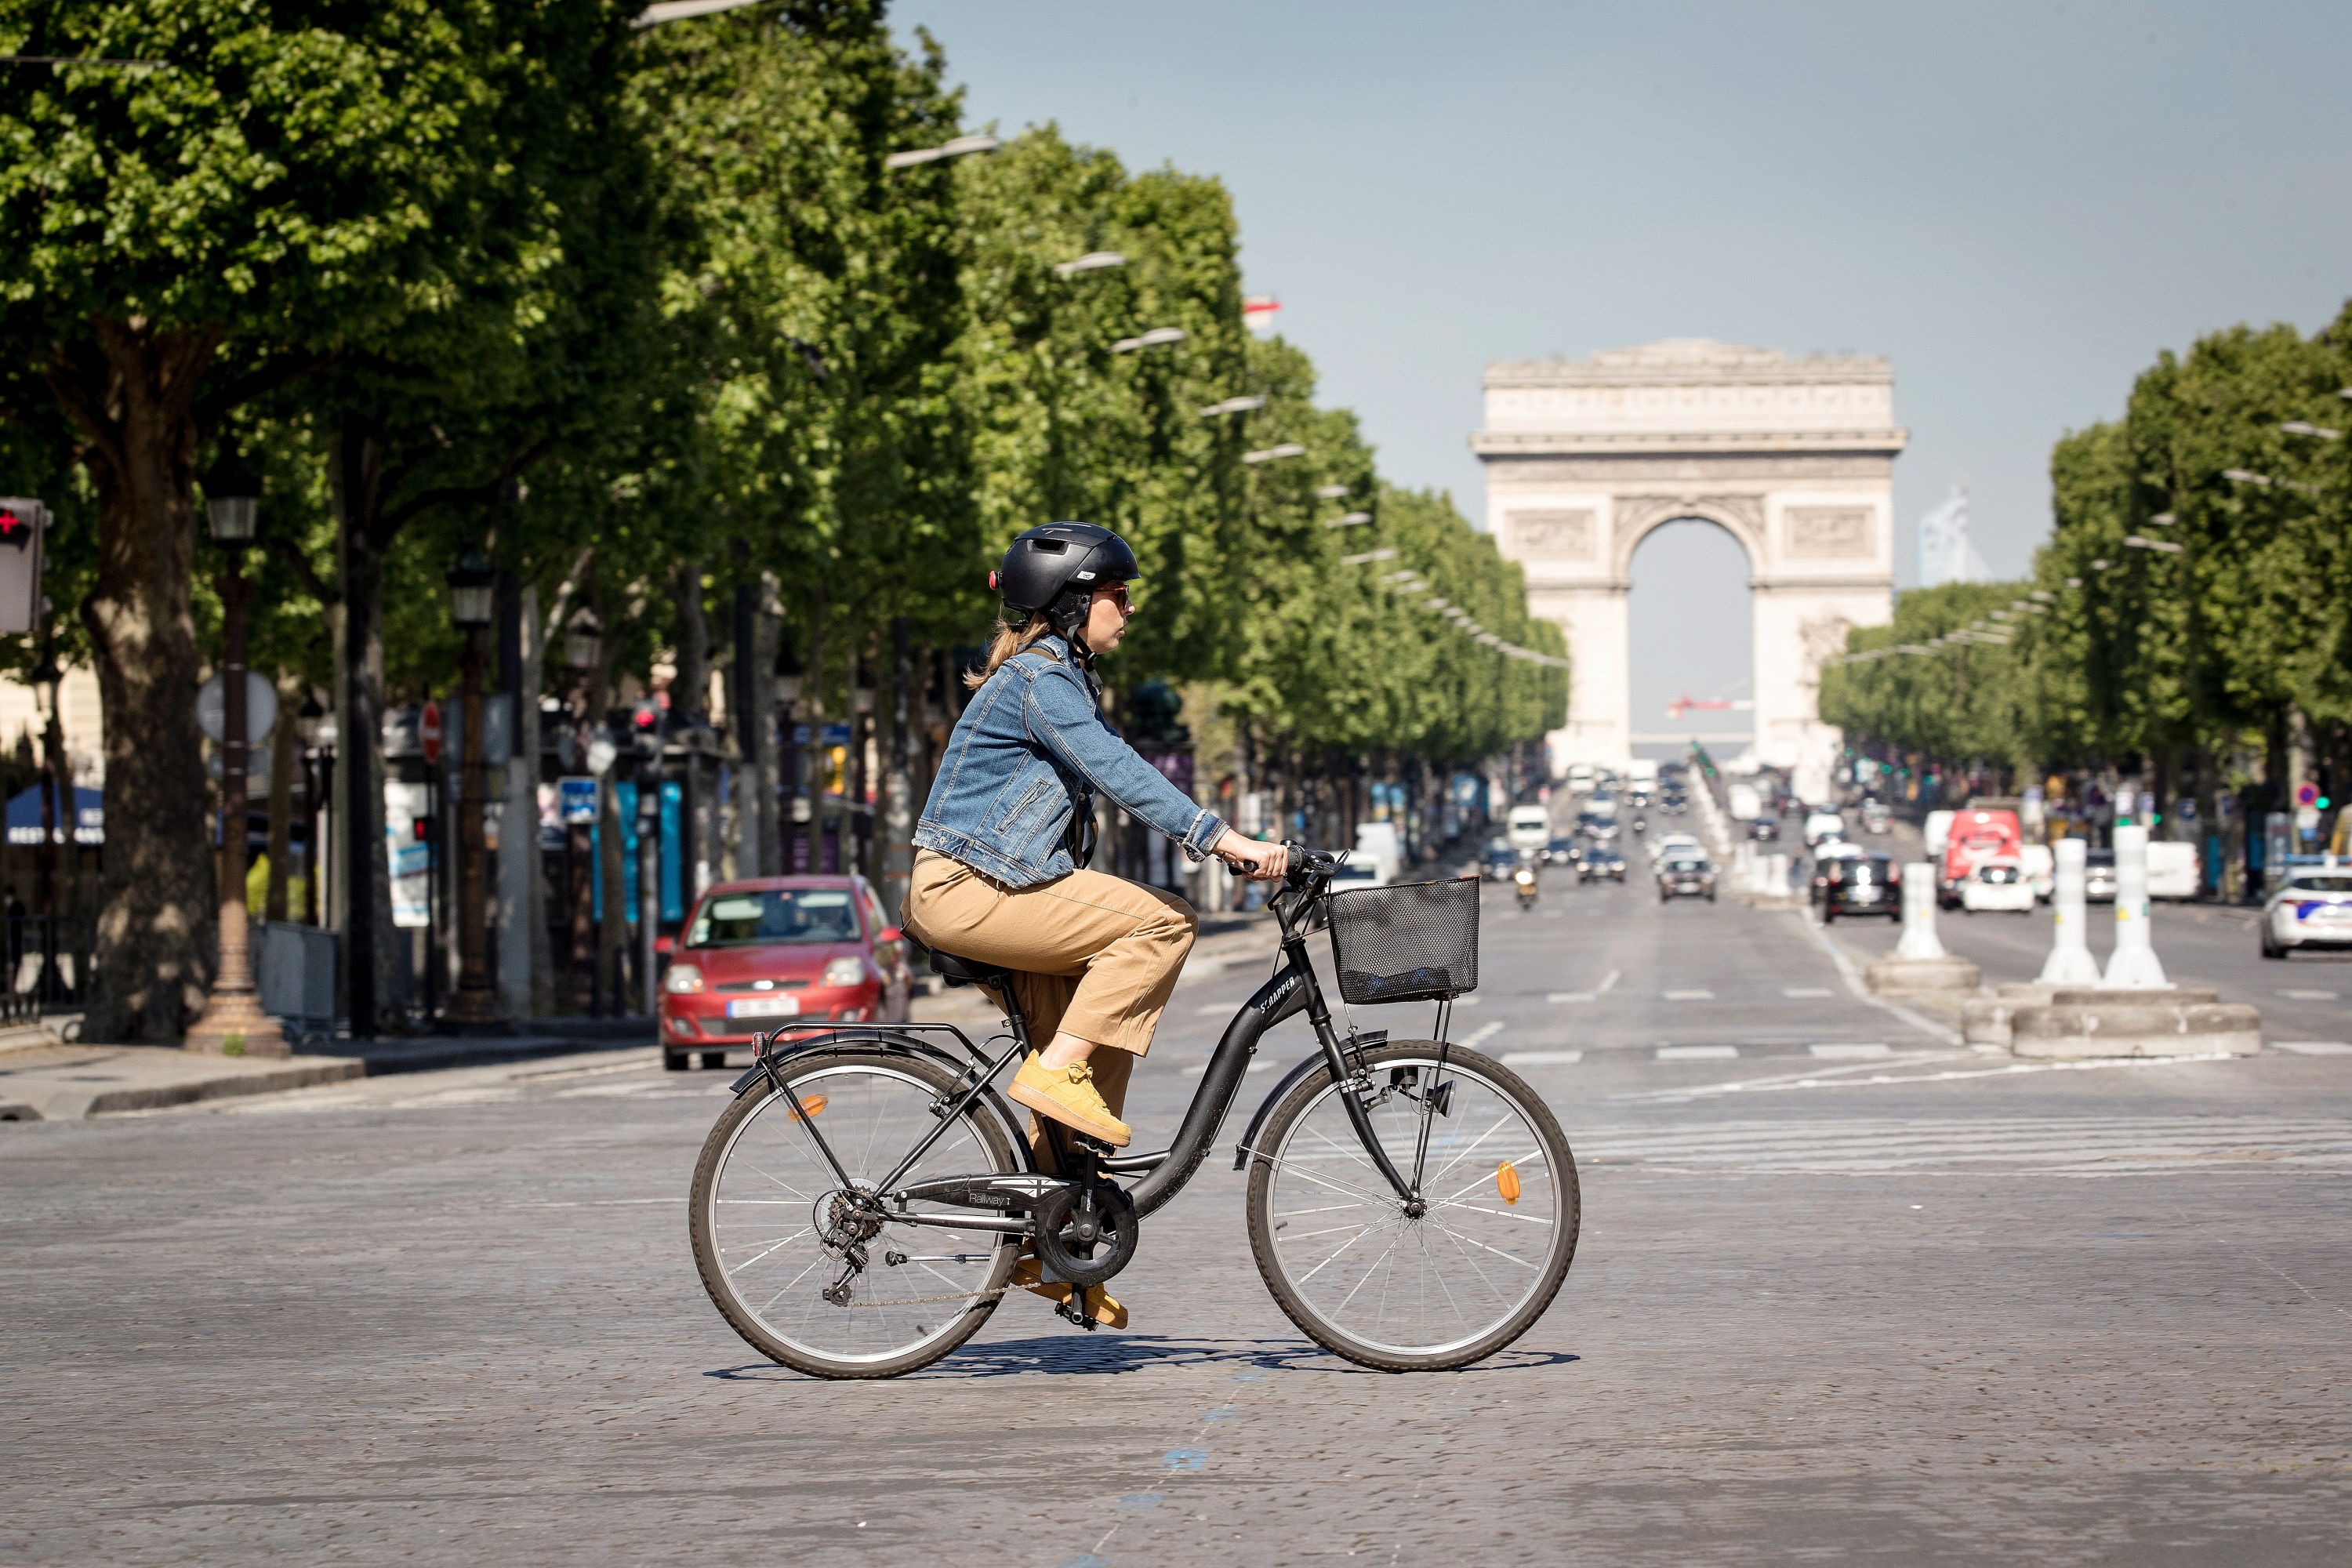 Gilet de sécurité à vélo : le point sur cet indispensable des cyclistes